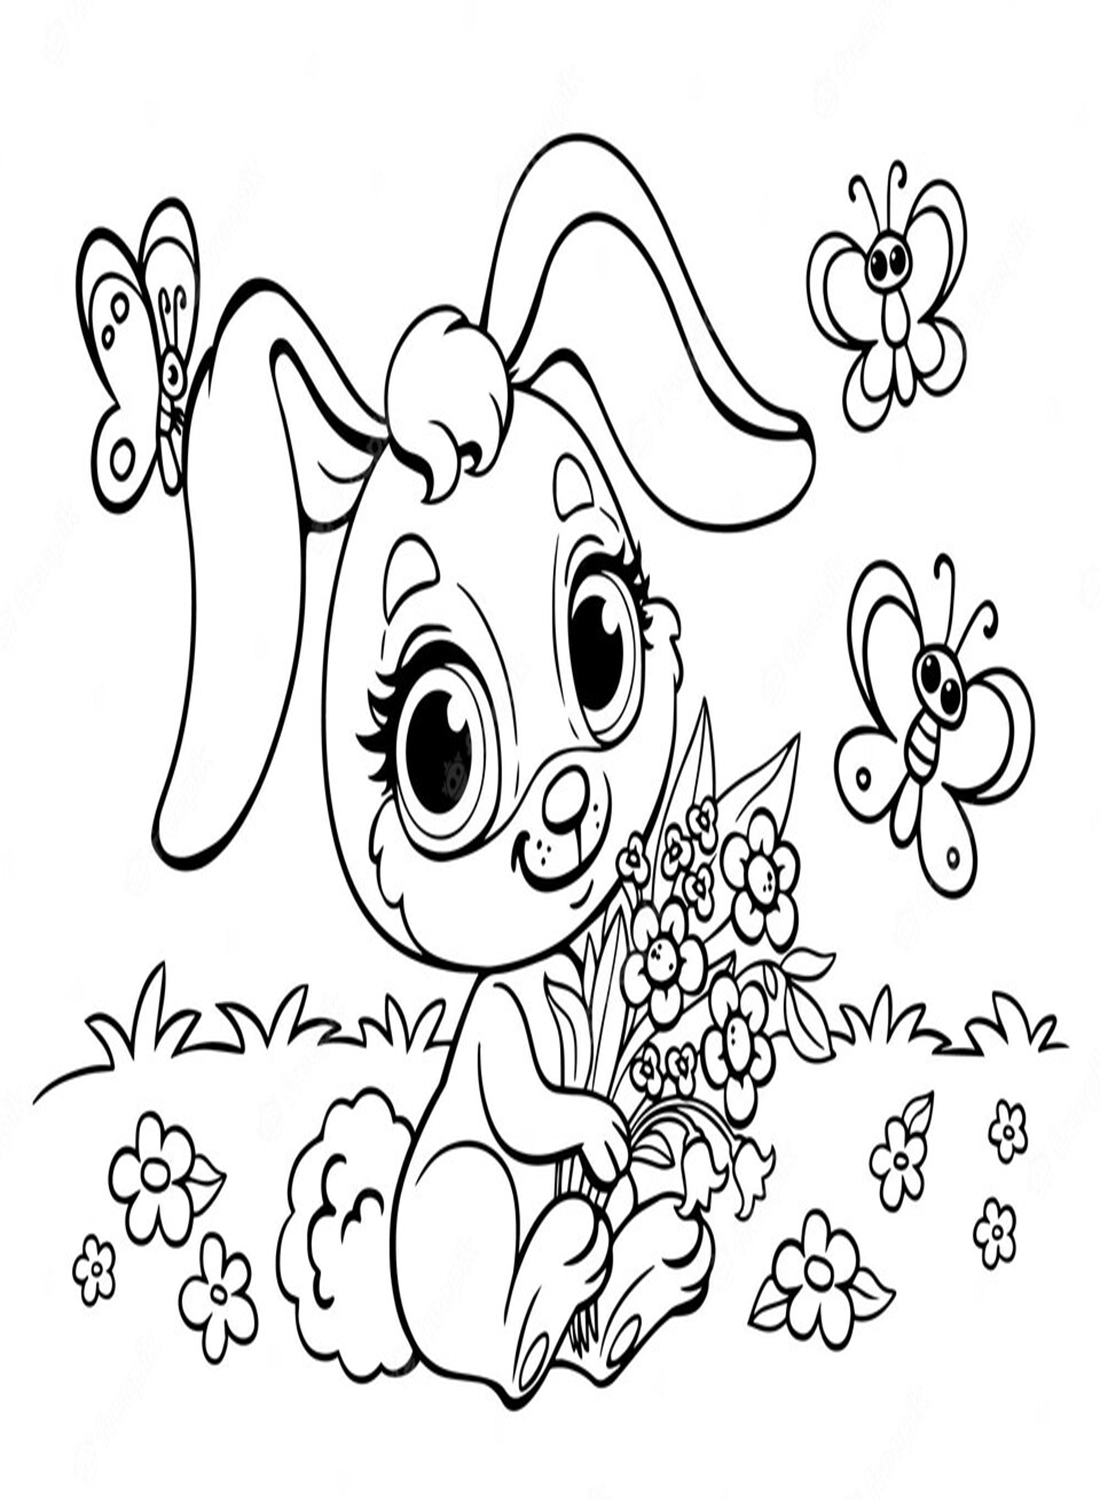 可爱的兔子与兔子的花束